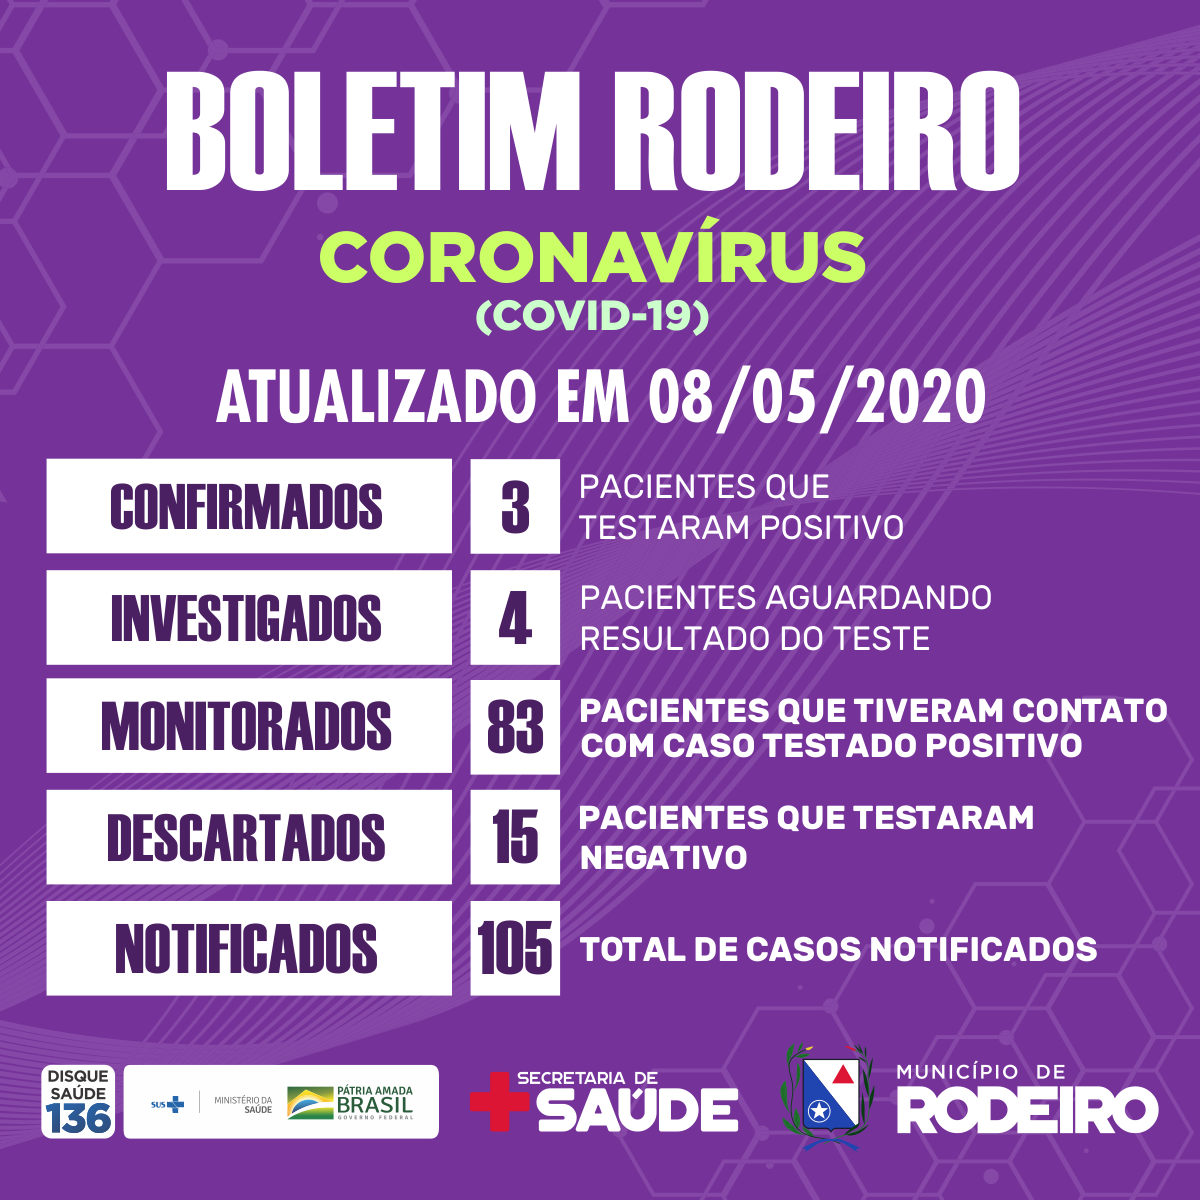 Boletim epidemiológico do Município de Rodeiro coronavírus, atualizado em 08/05/2020